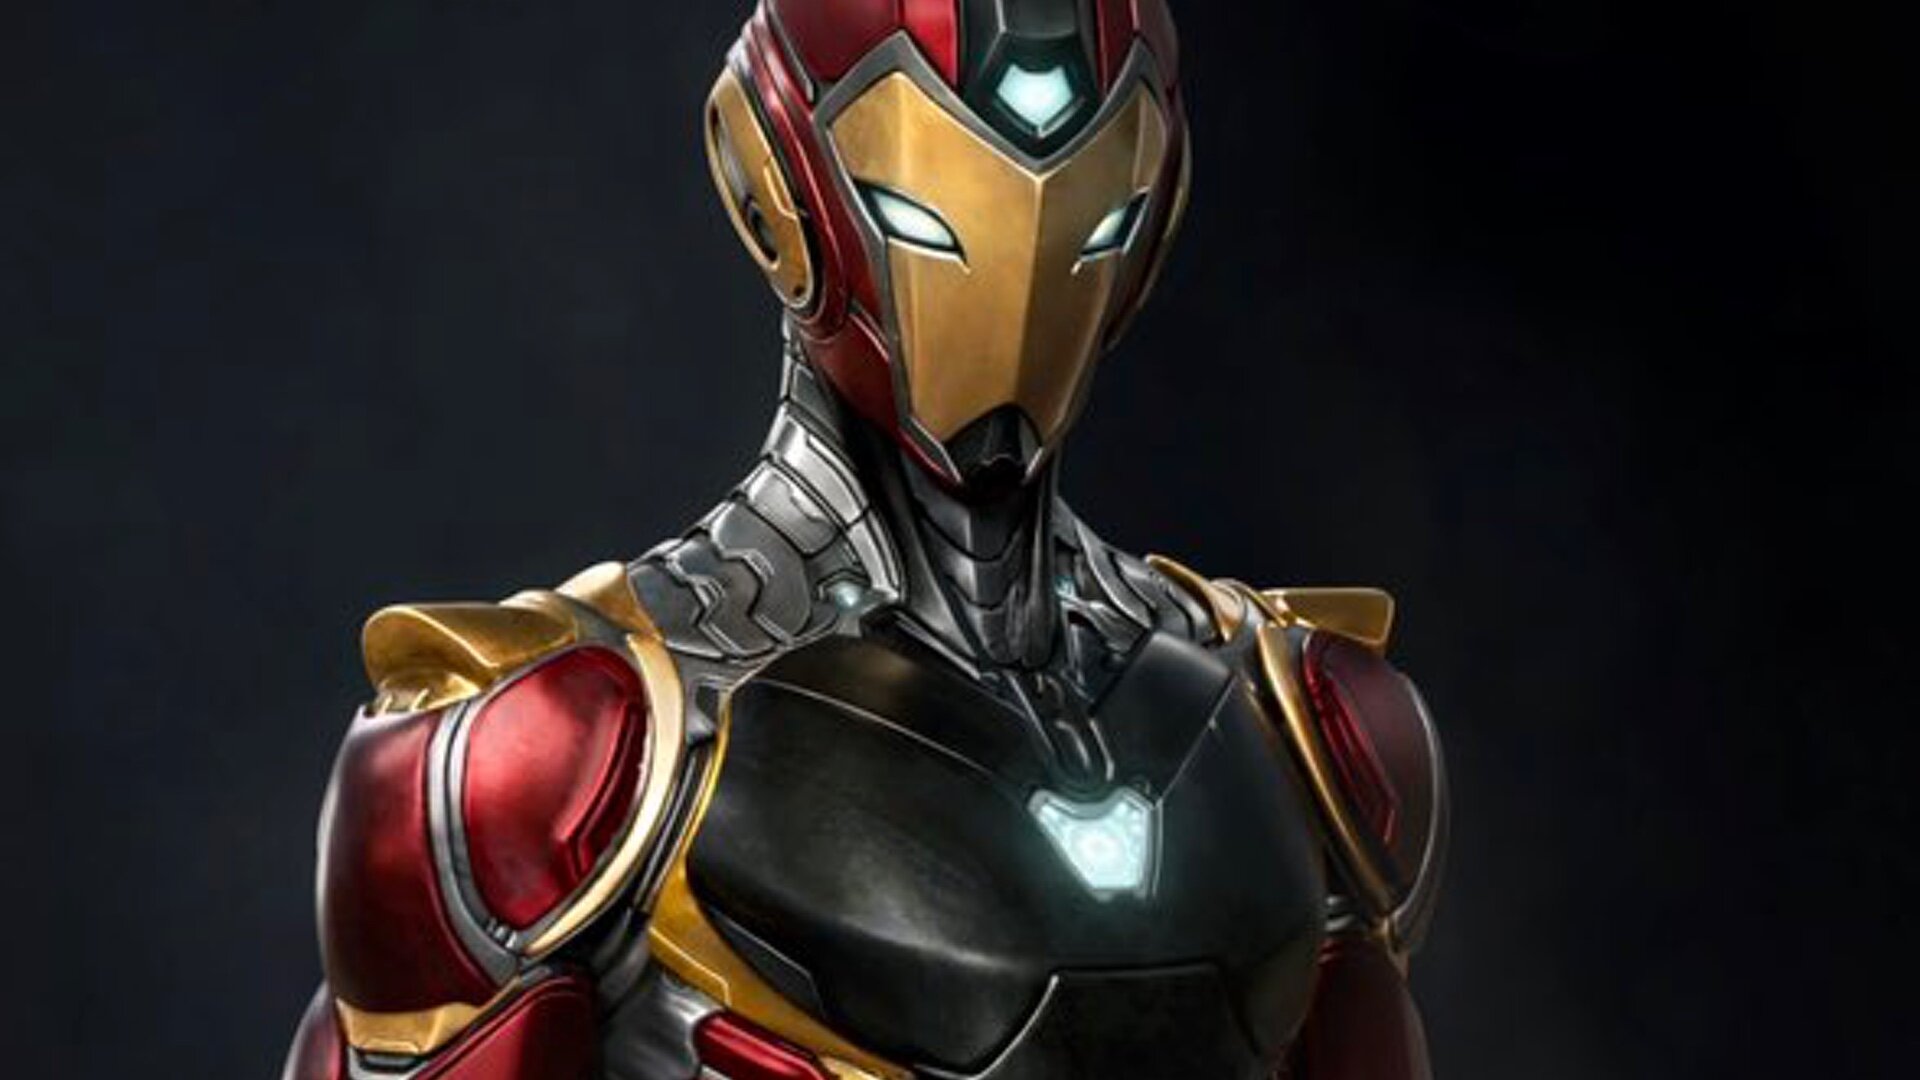 Marvel's Iron Fist, TV fanart